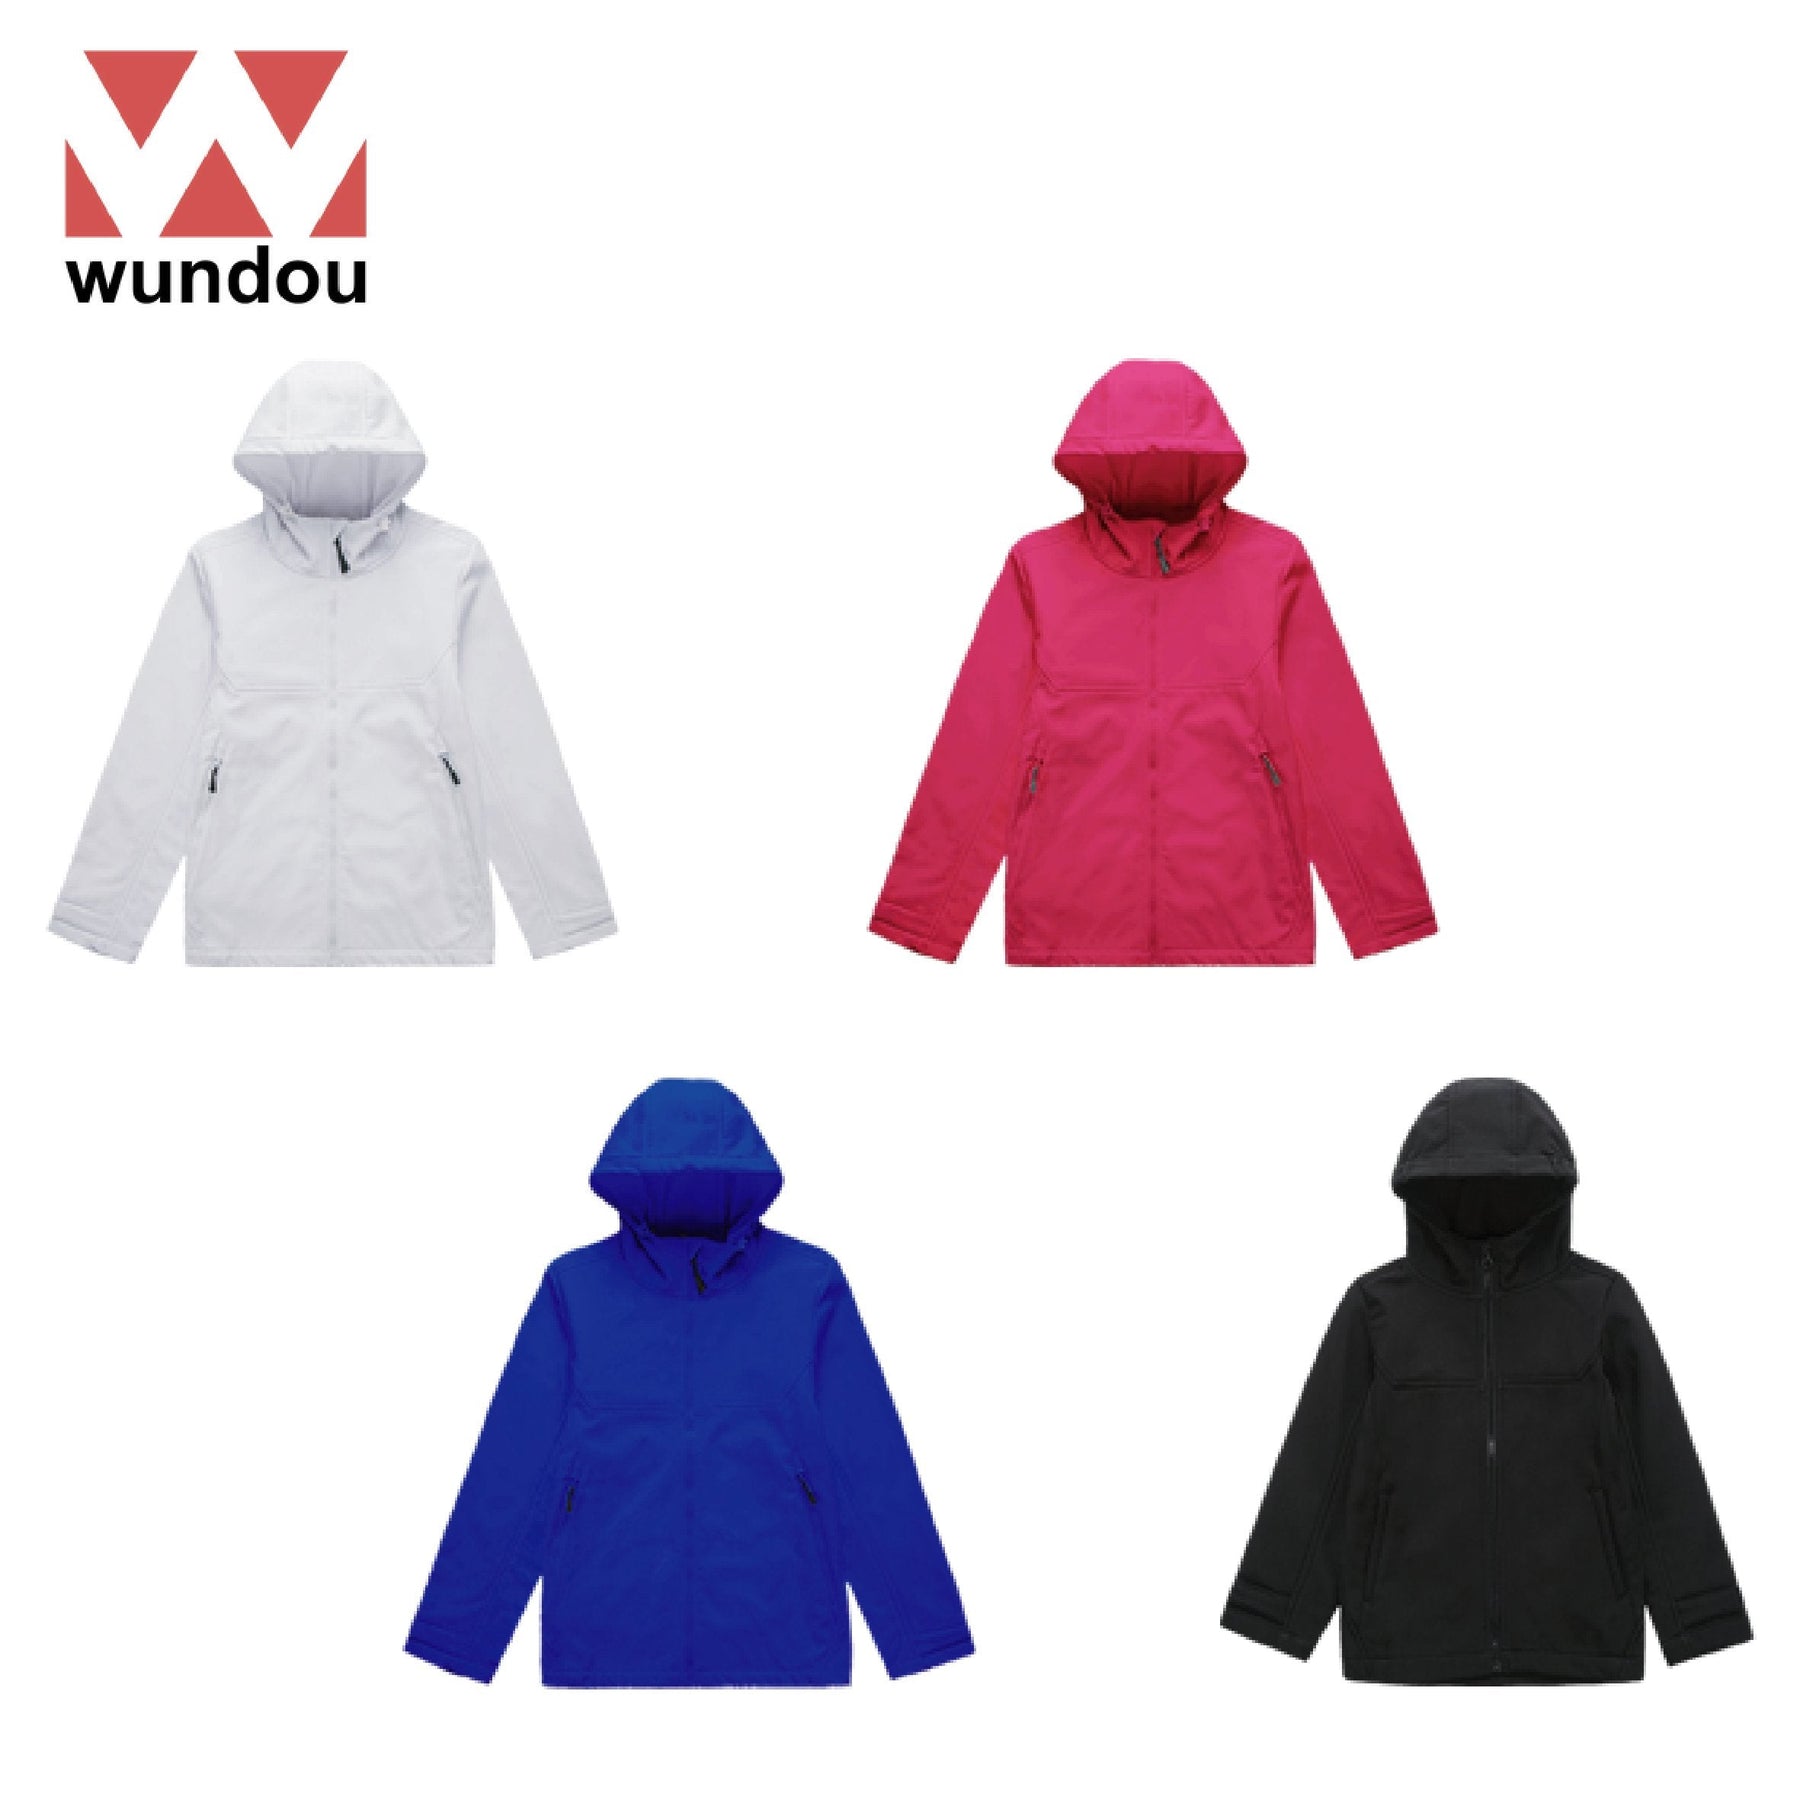 Wundou P4210 Softshell Fleece Jacket